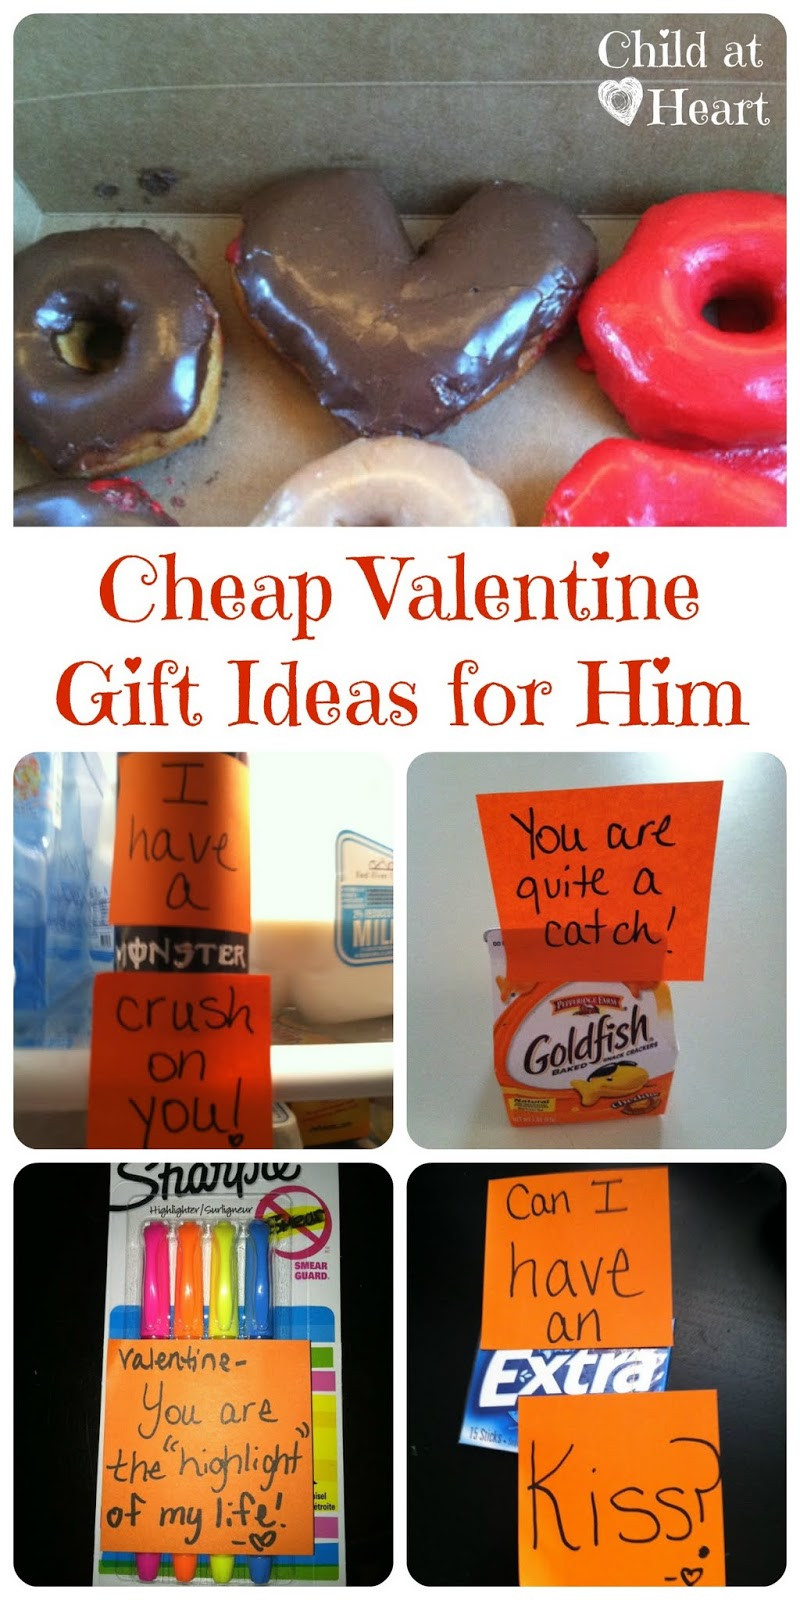 Valentine Gift Ideas For Boyfriend
 Cheap Valentine Gift Ideas for Him Child at Heart Blog